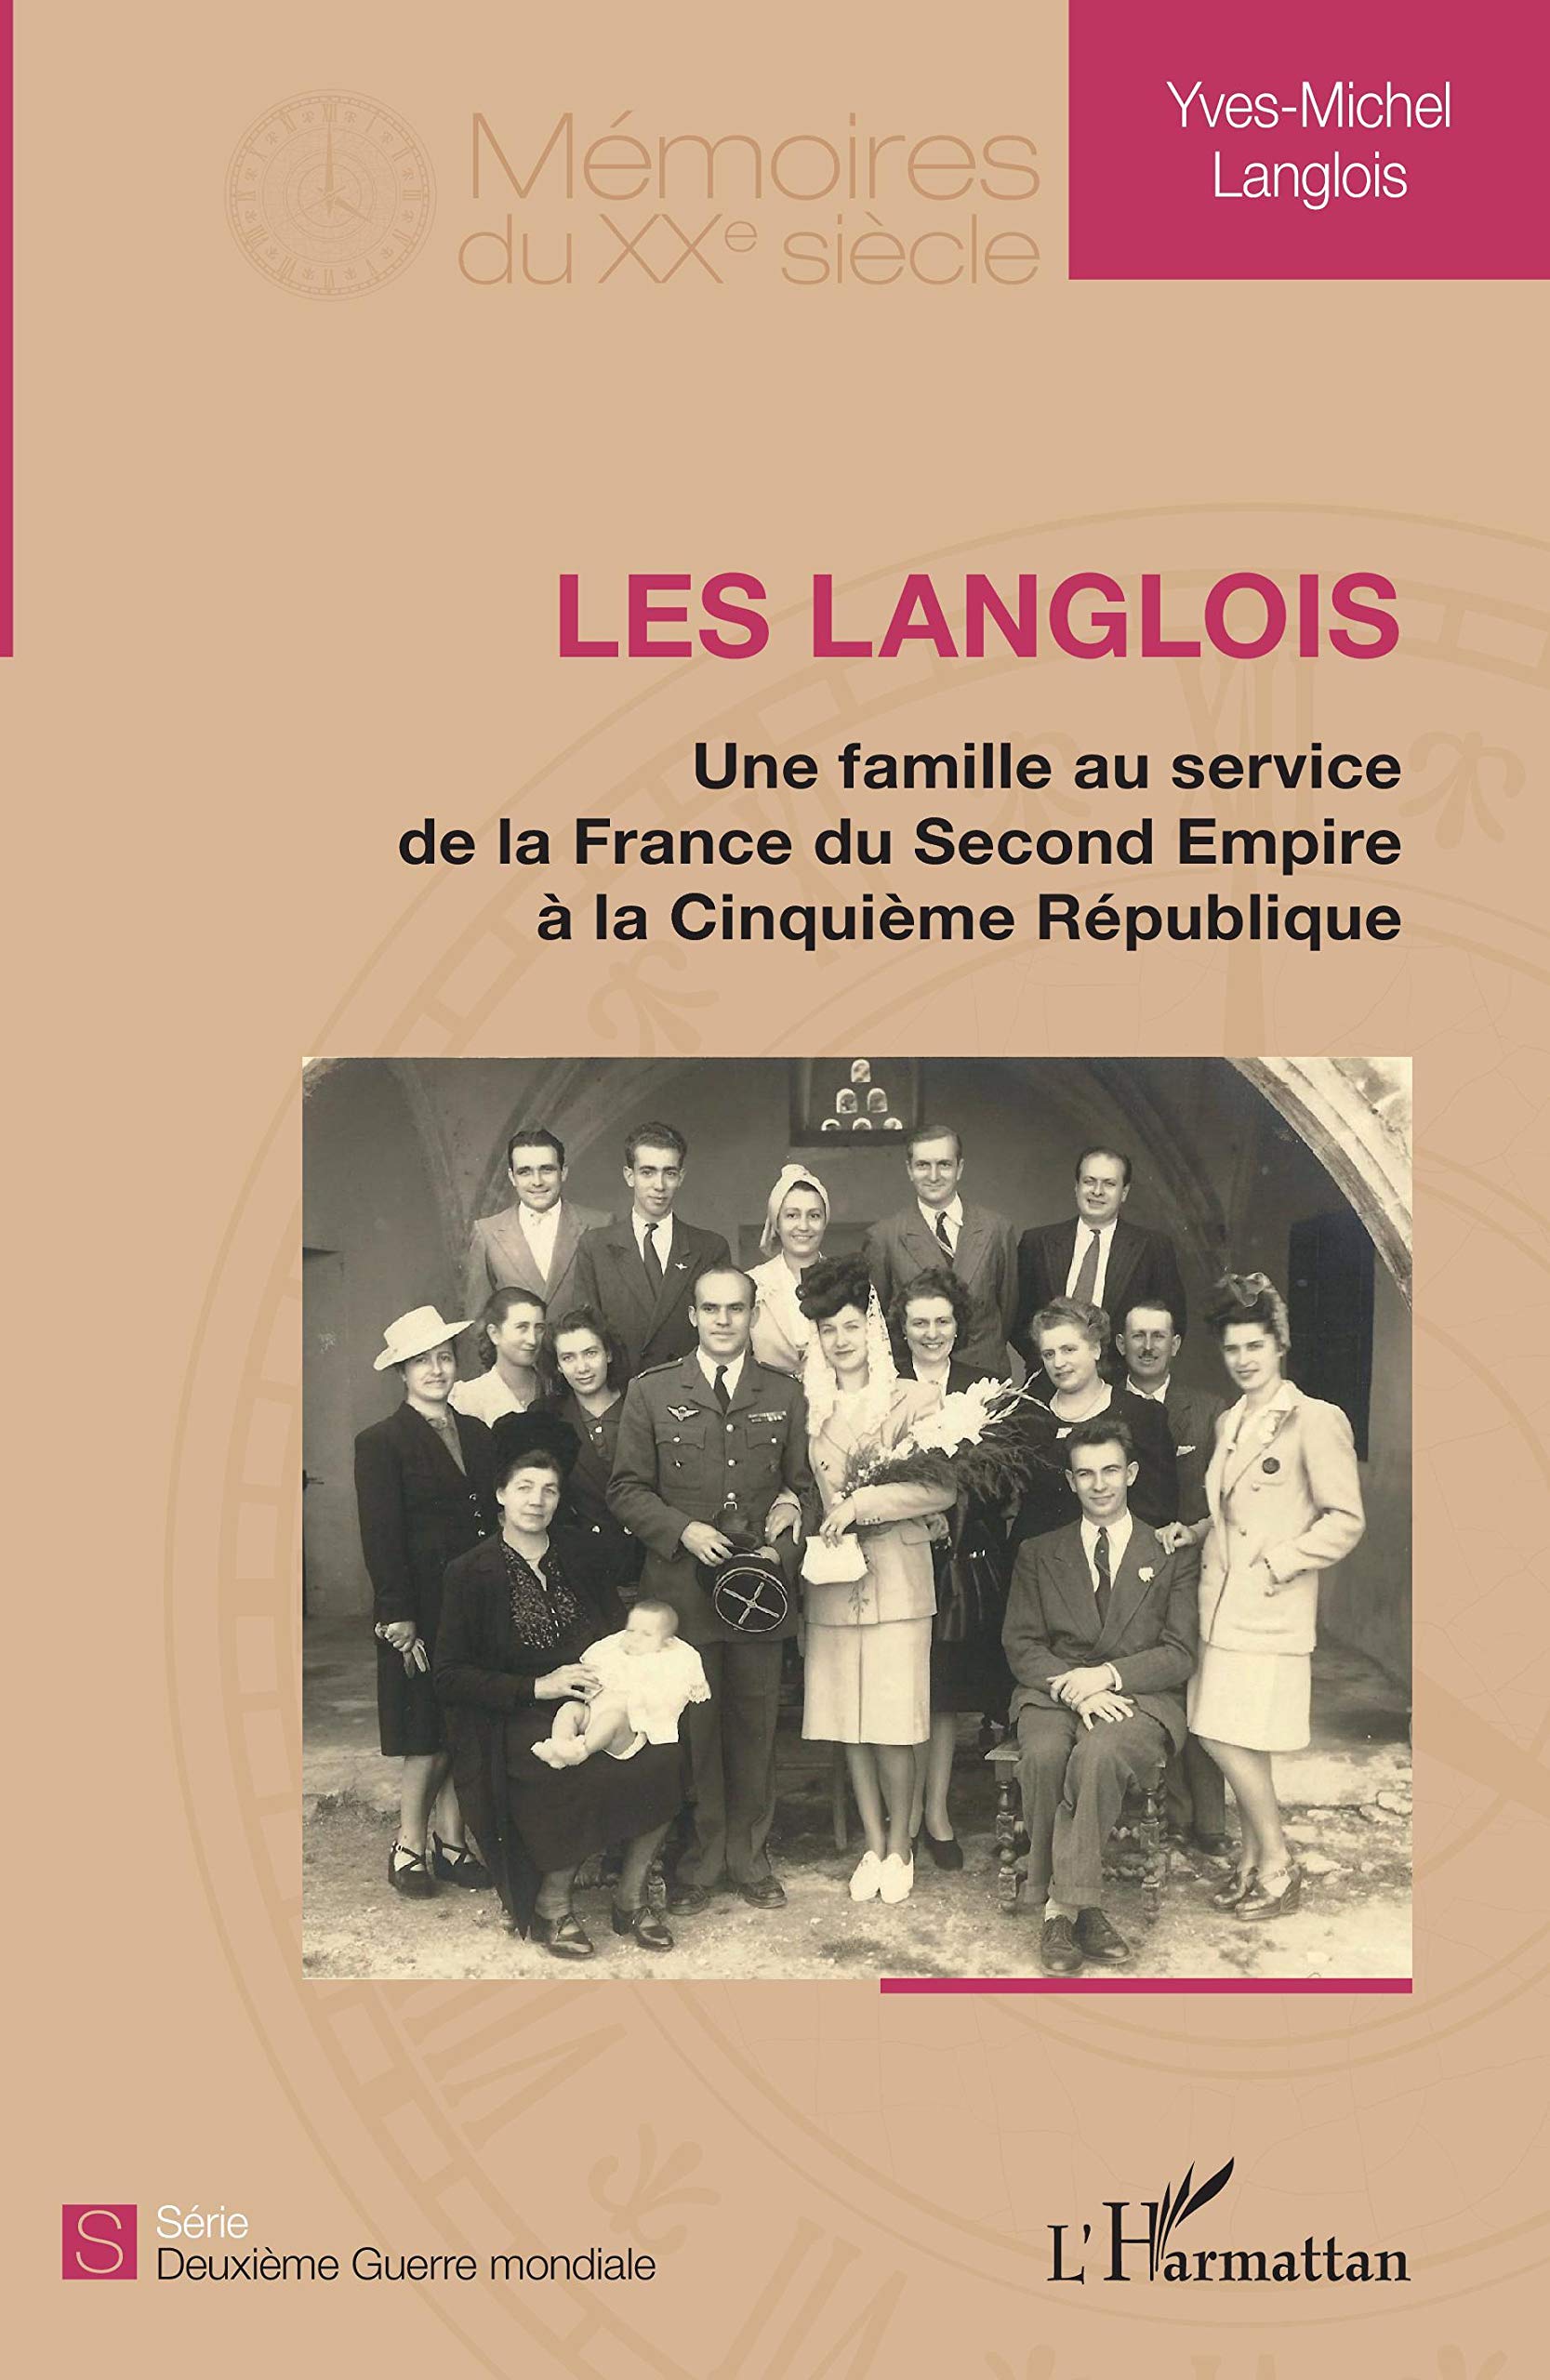 Une famille au service de la France du Second Empire à la Cinquième République